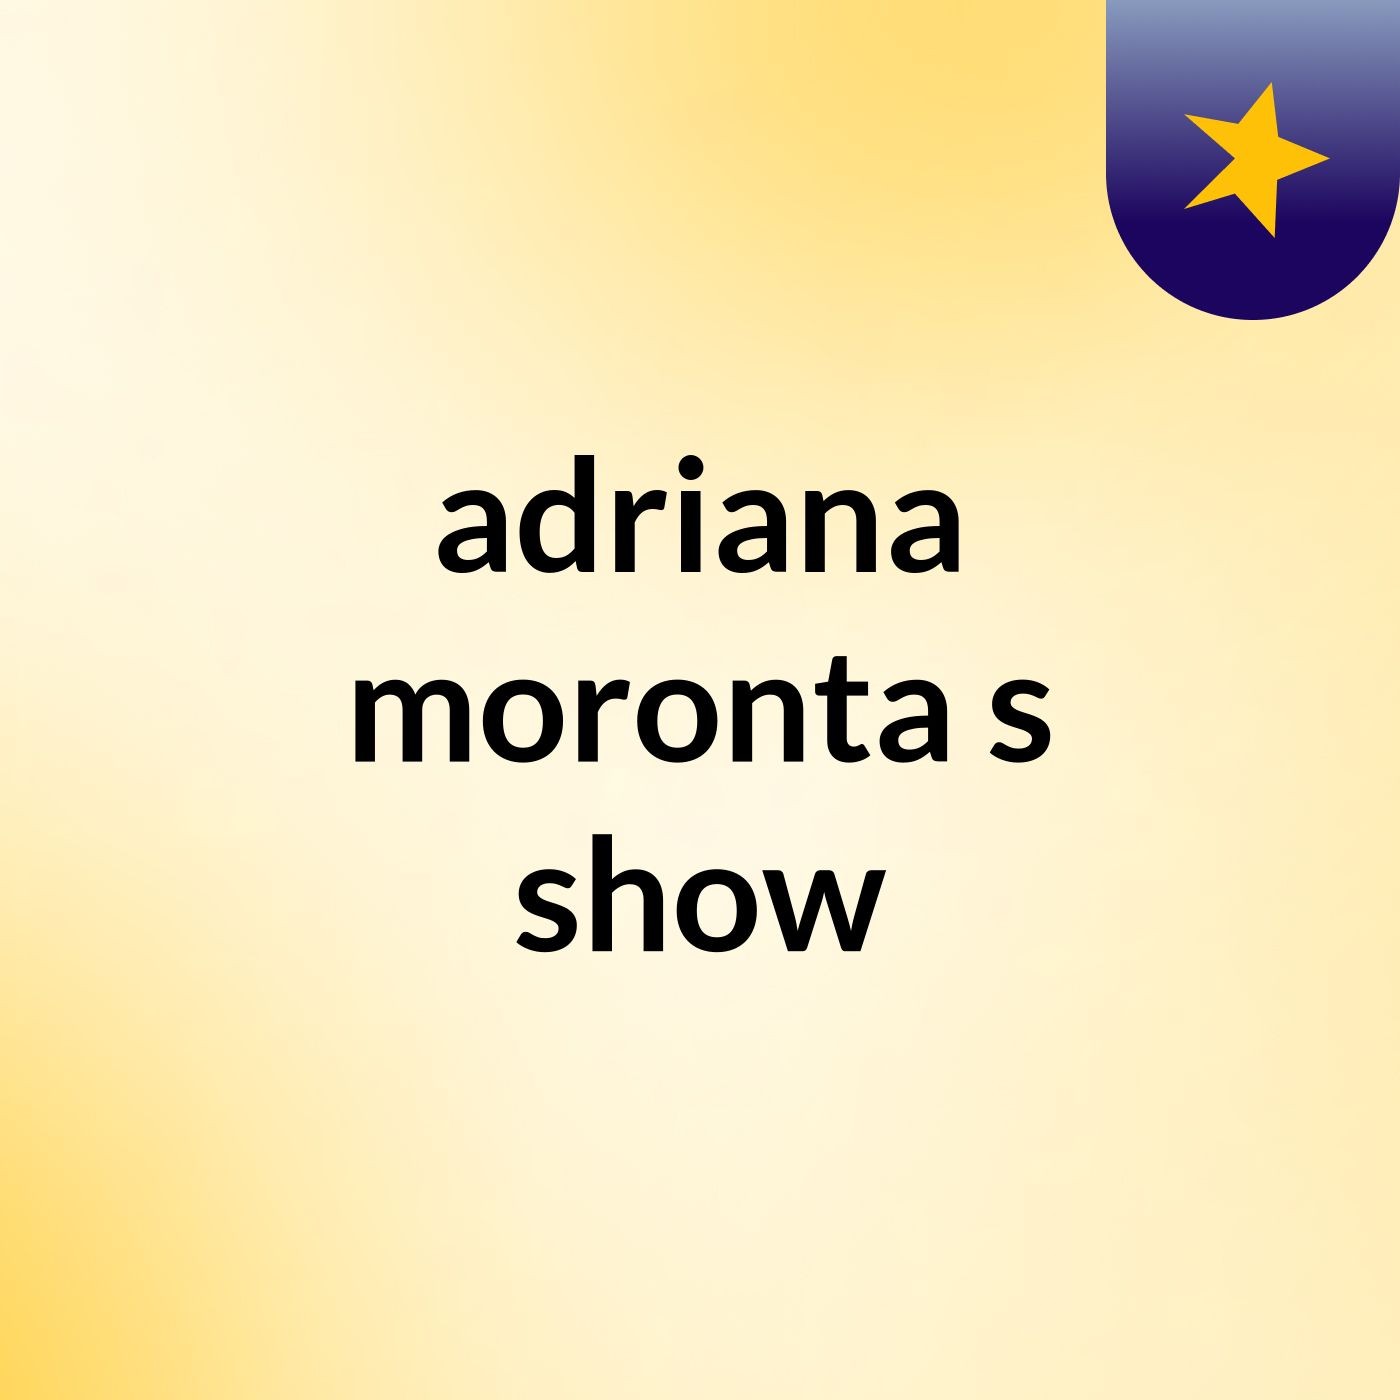 adriana moronta's show